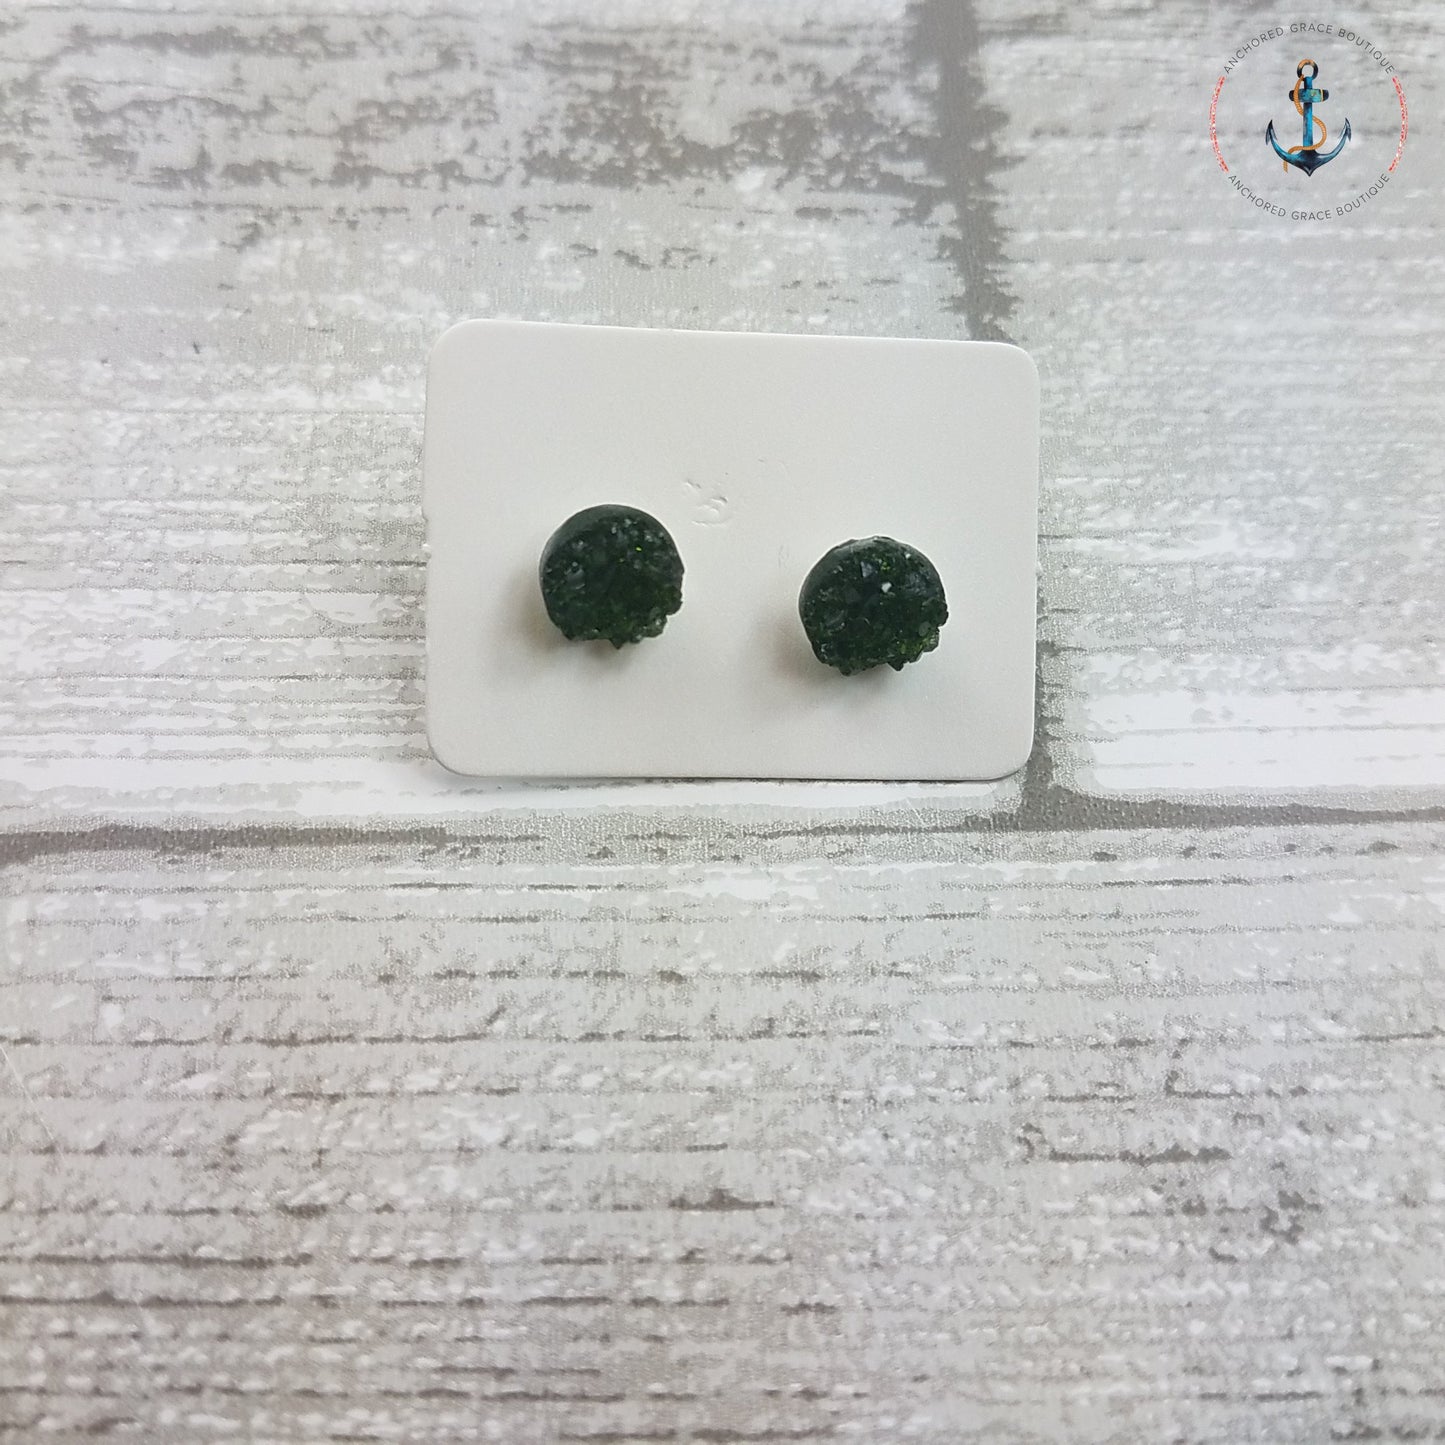 8Mm Druzy Stud Earrings - Emerald